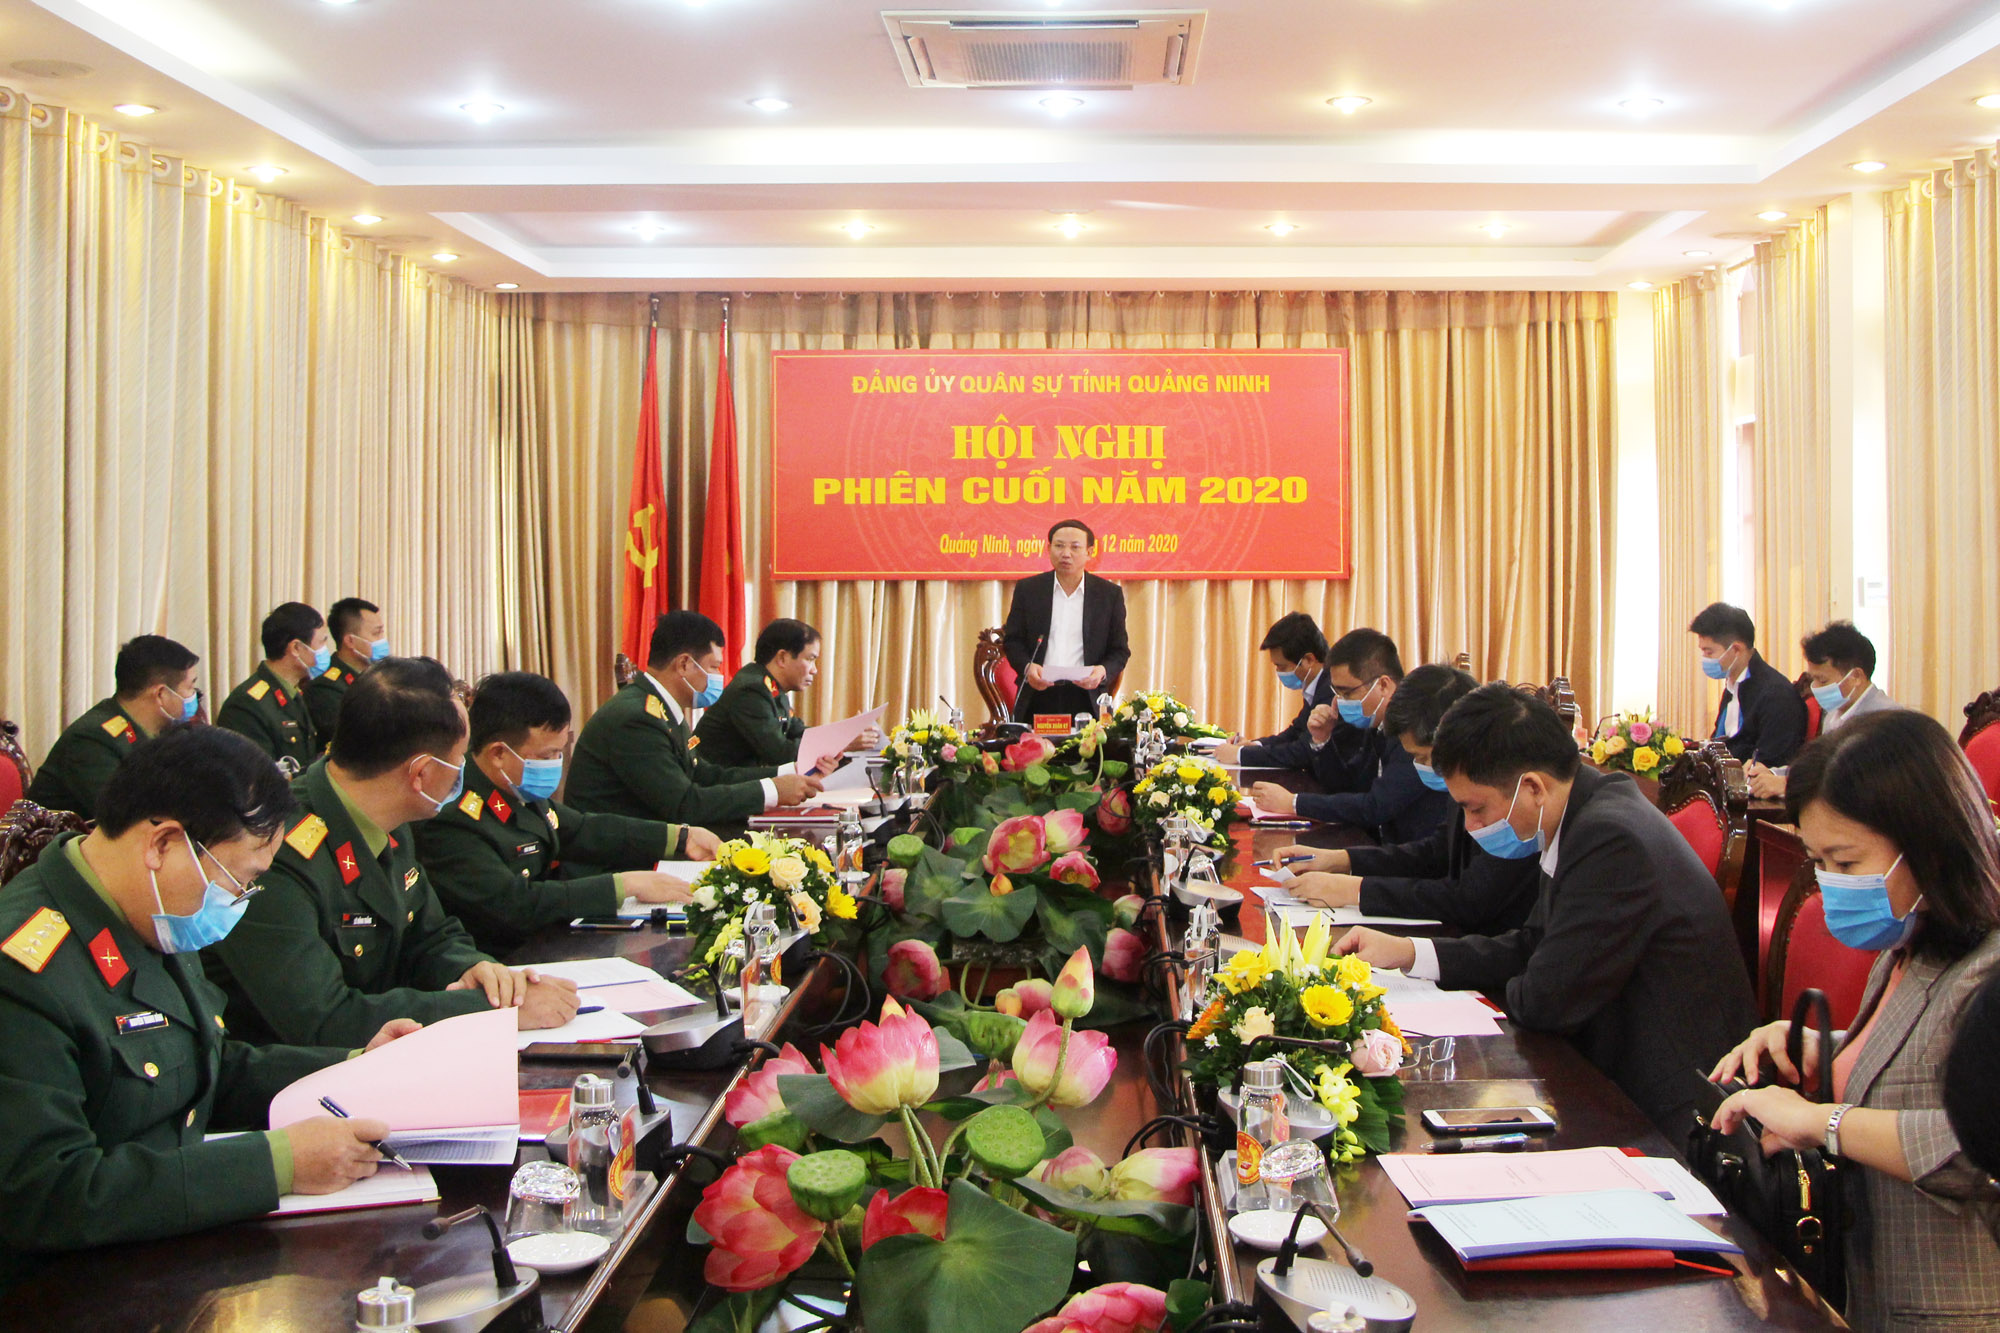 Đồng chí Nguyễn Xuân Ký, Bí thư Tỉnh ủy, Chủ tịch HĐND tỉnh, Bí thư Đảng ủy Quân sự tỉnh, kết luận hội nghị.